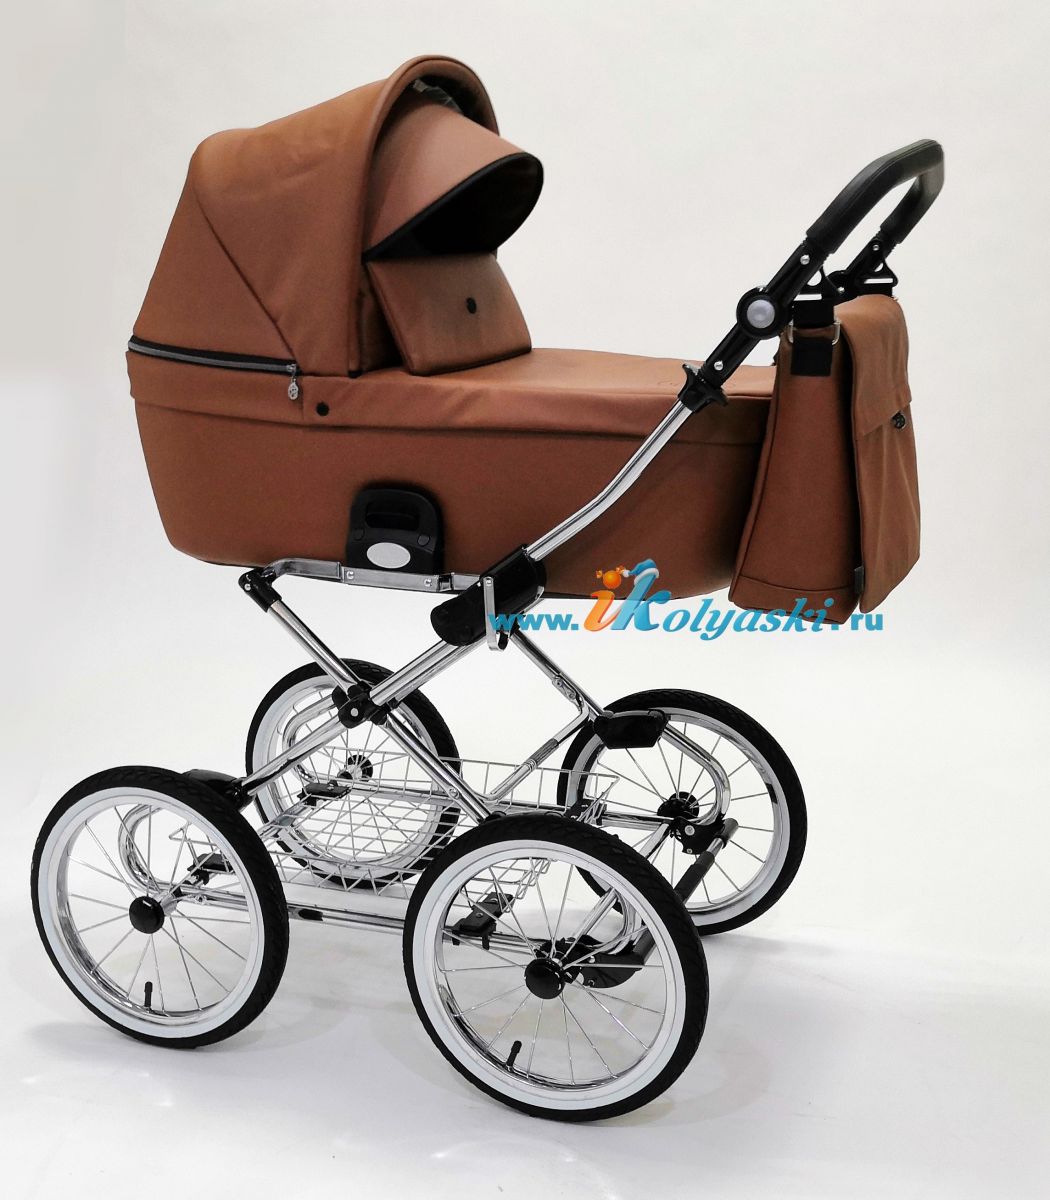 Roan Coss Classic коляска для новорожденных  на больших колесах новые цвета 2020 - купить в интернет-магазине Иколяски в Москве с доставкой по РФ - цвет Cognac